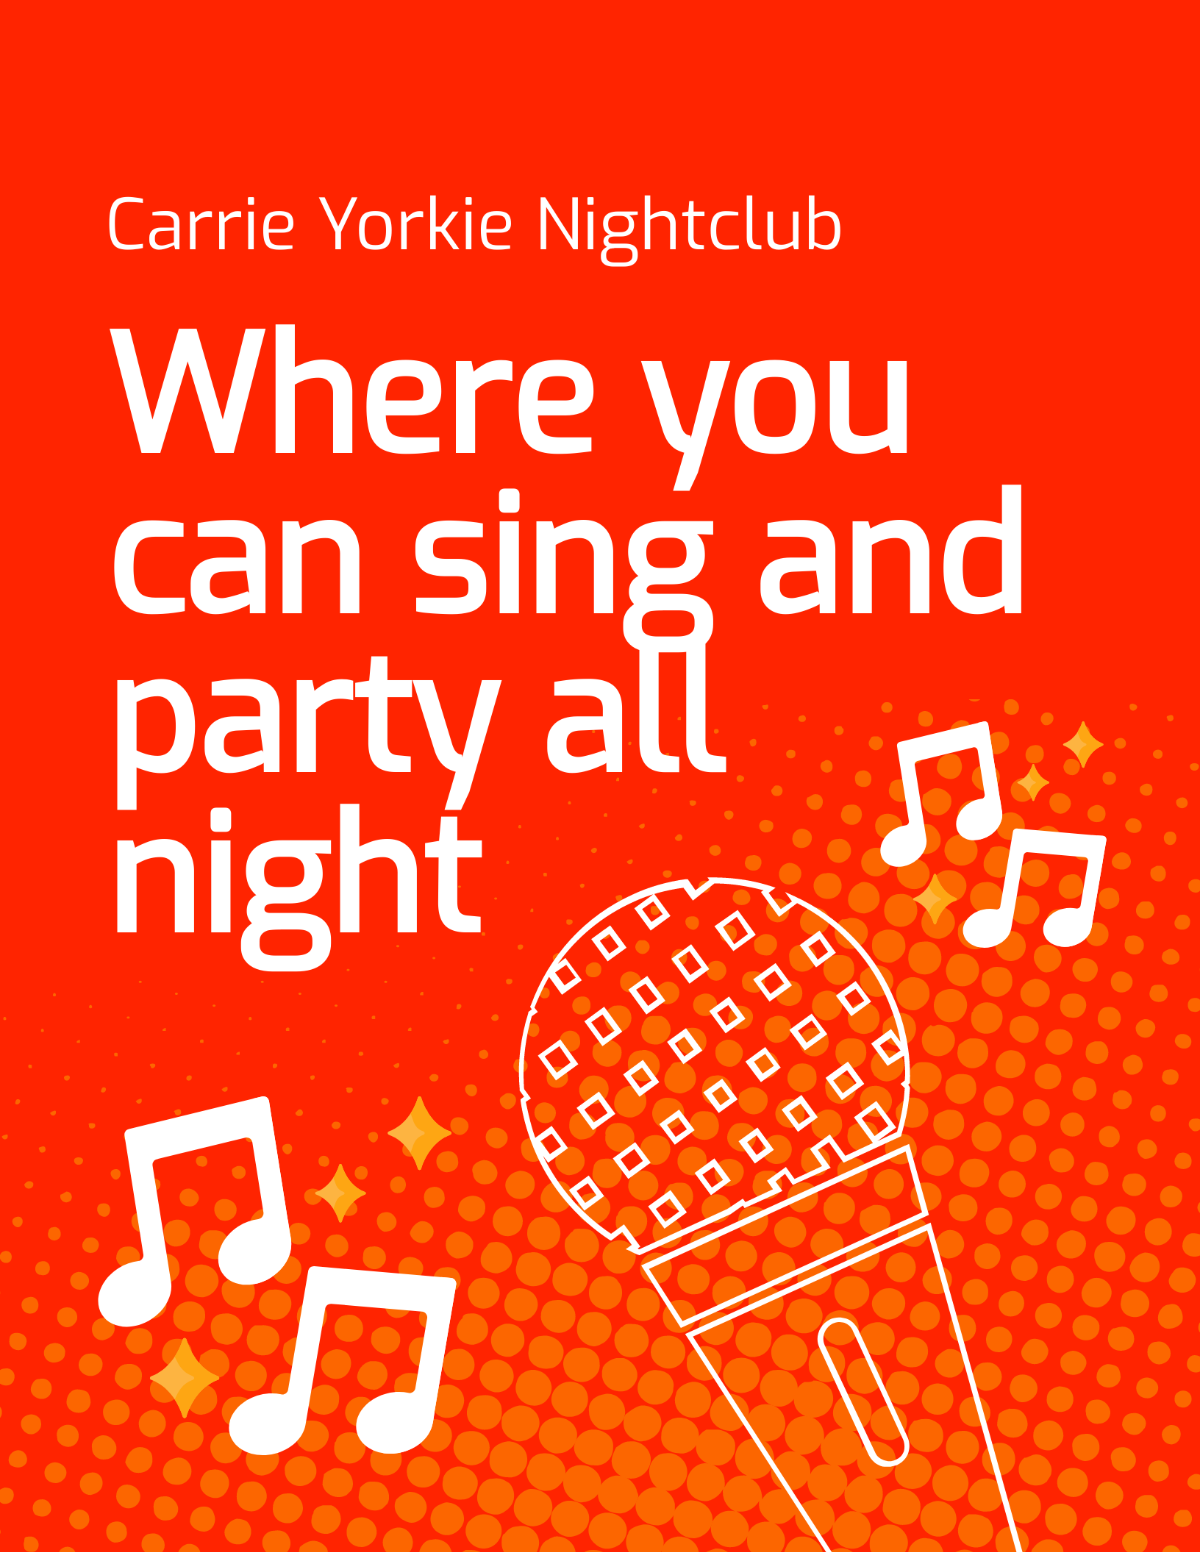 Karaoke Nightclub Flyer Template